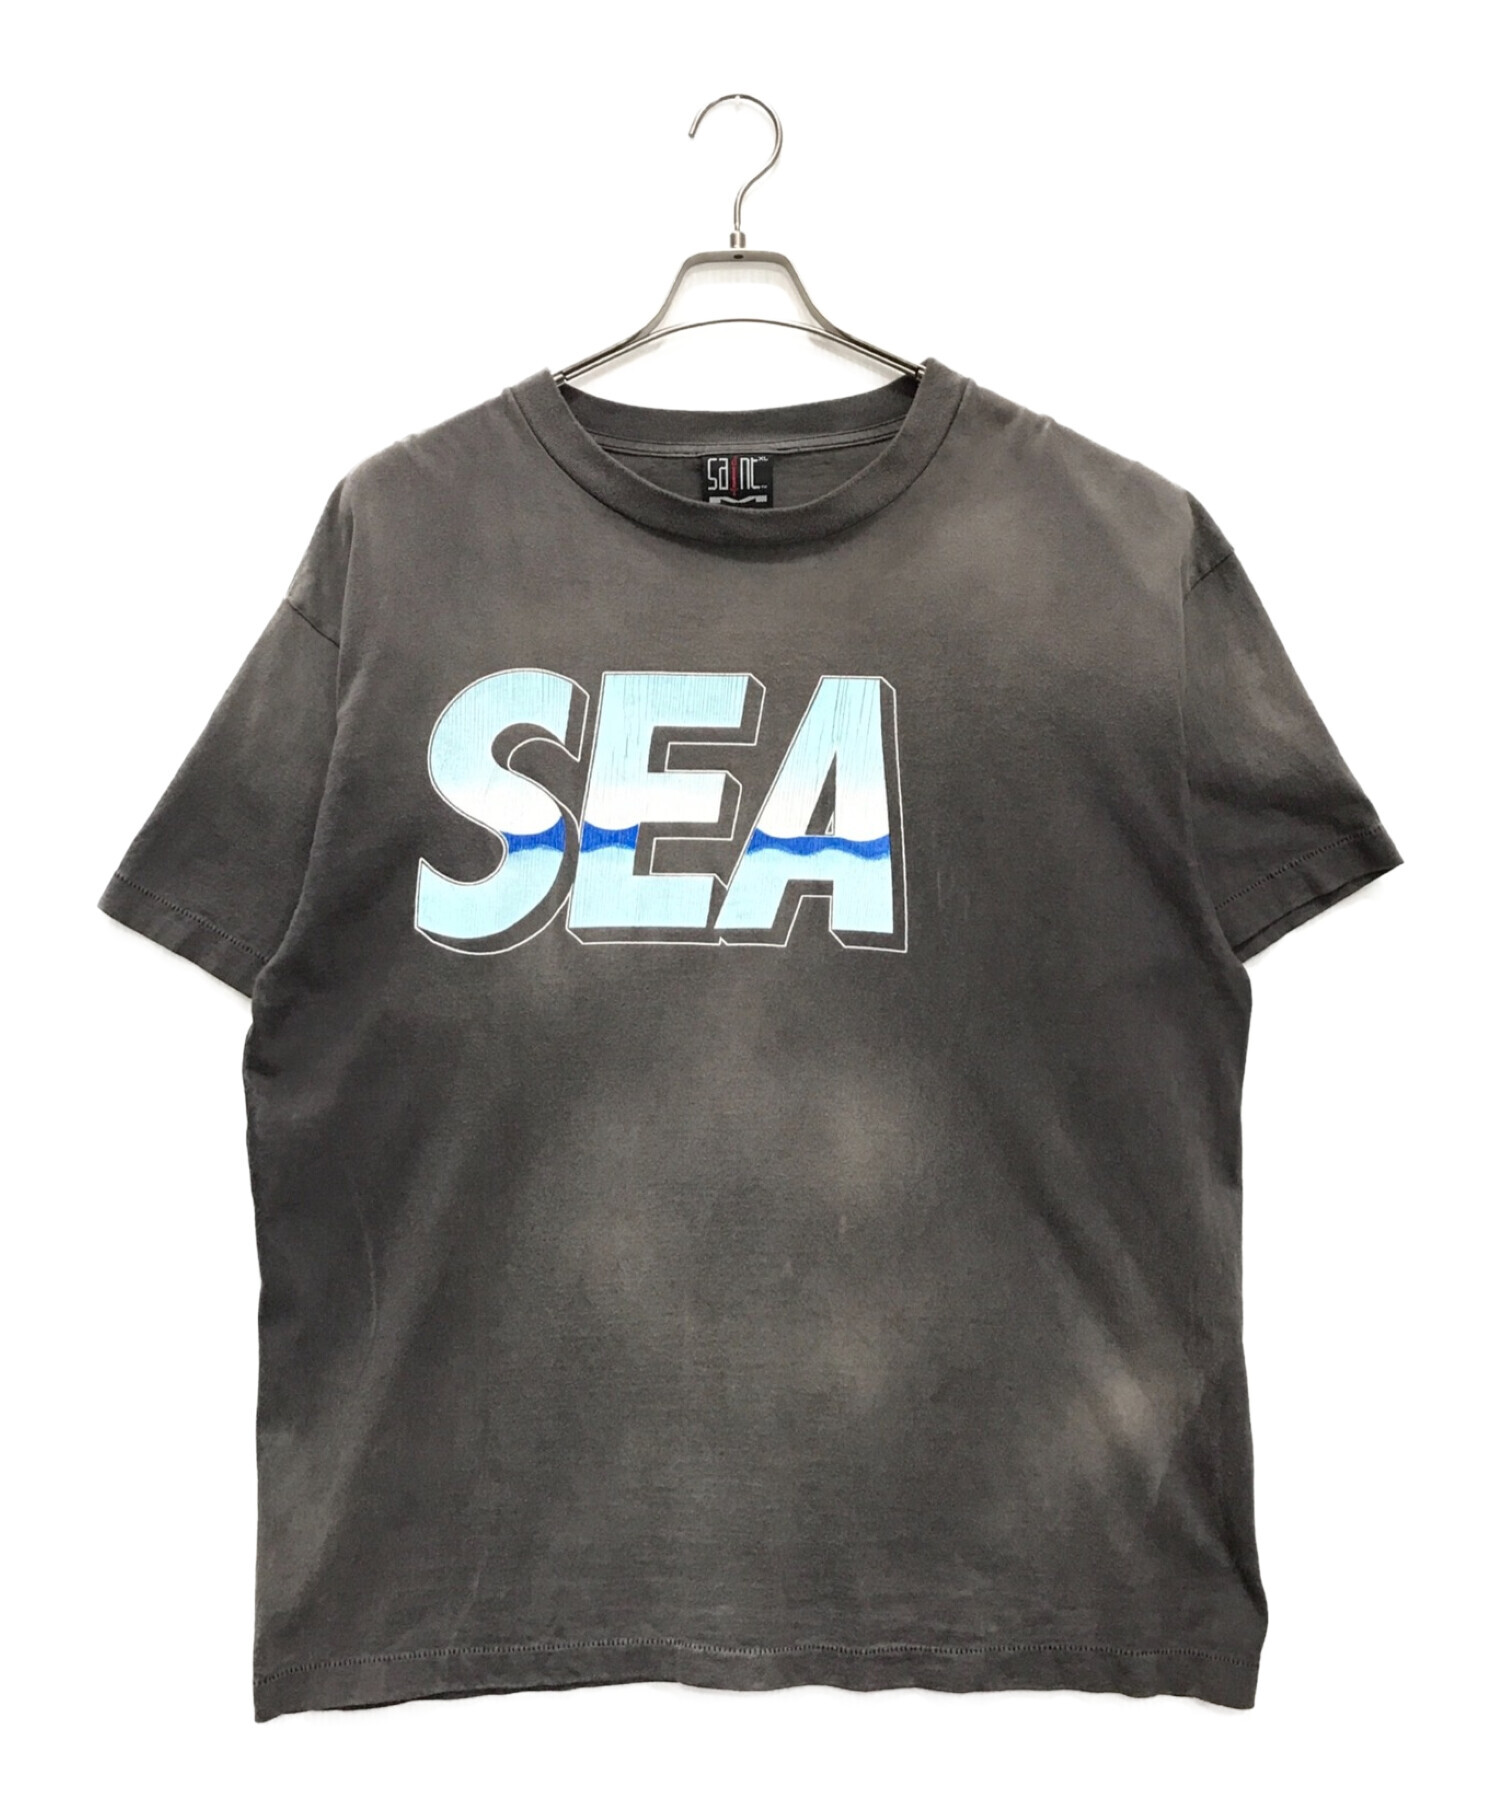 SAINT MICHAEL (セントマイケル) WIND AND SEA (ウィンダンシー) S/S T-SHIRT グレー サイズ:XL